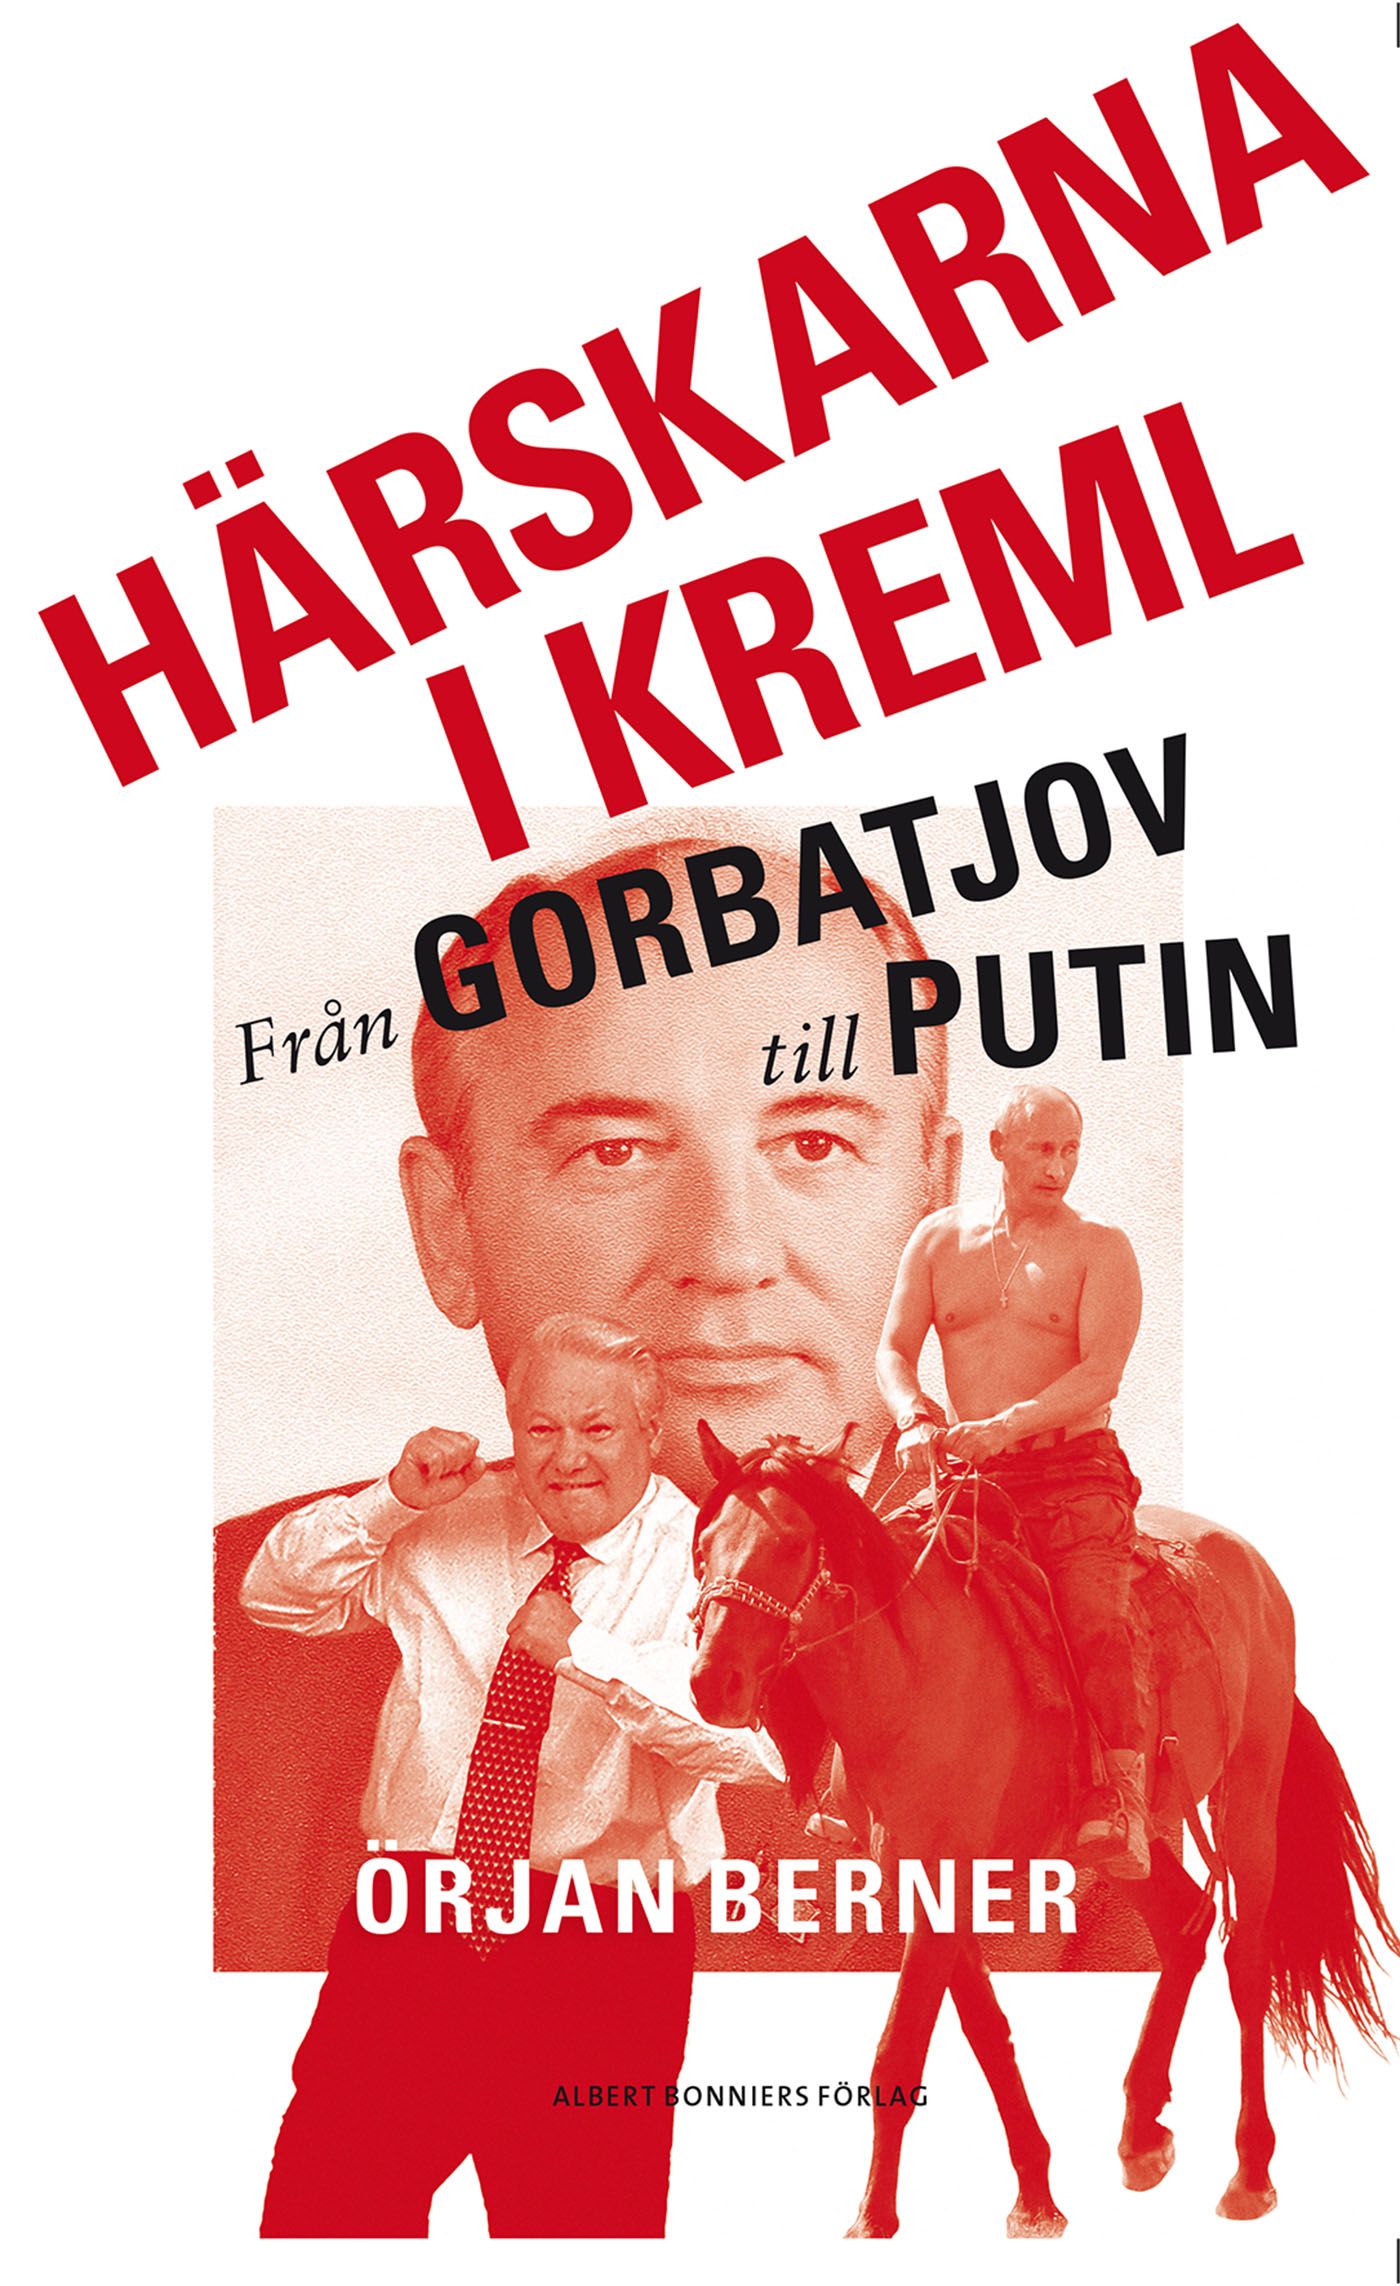 Härskarna i Kreml - från Gorbatjov till Putin, e-bog af Örjan Berner